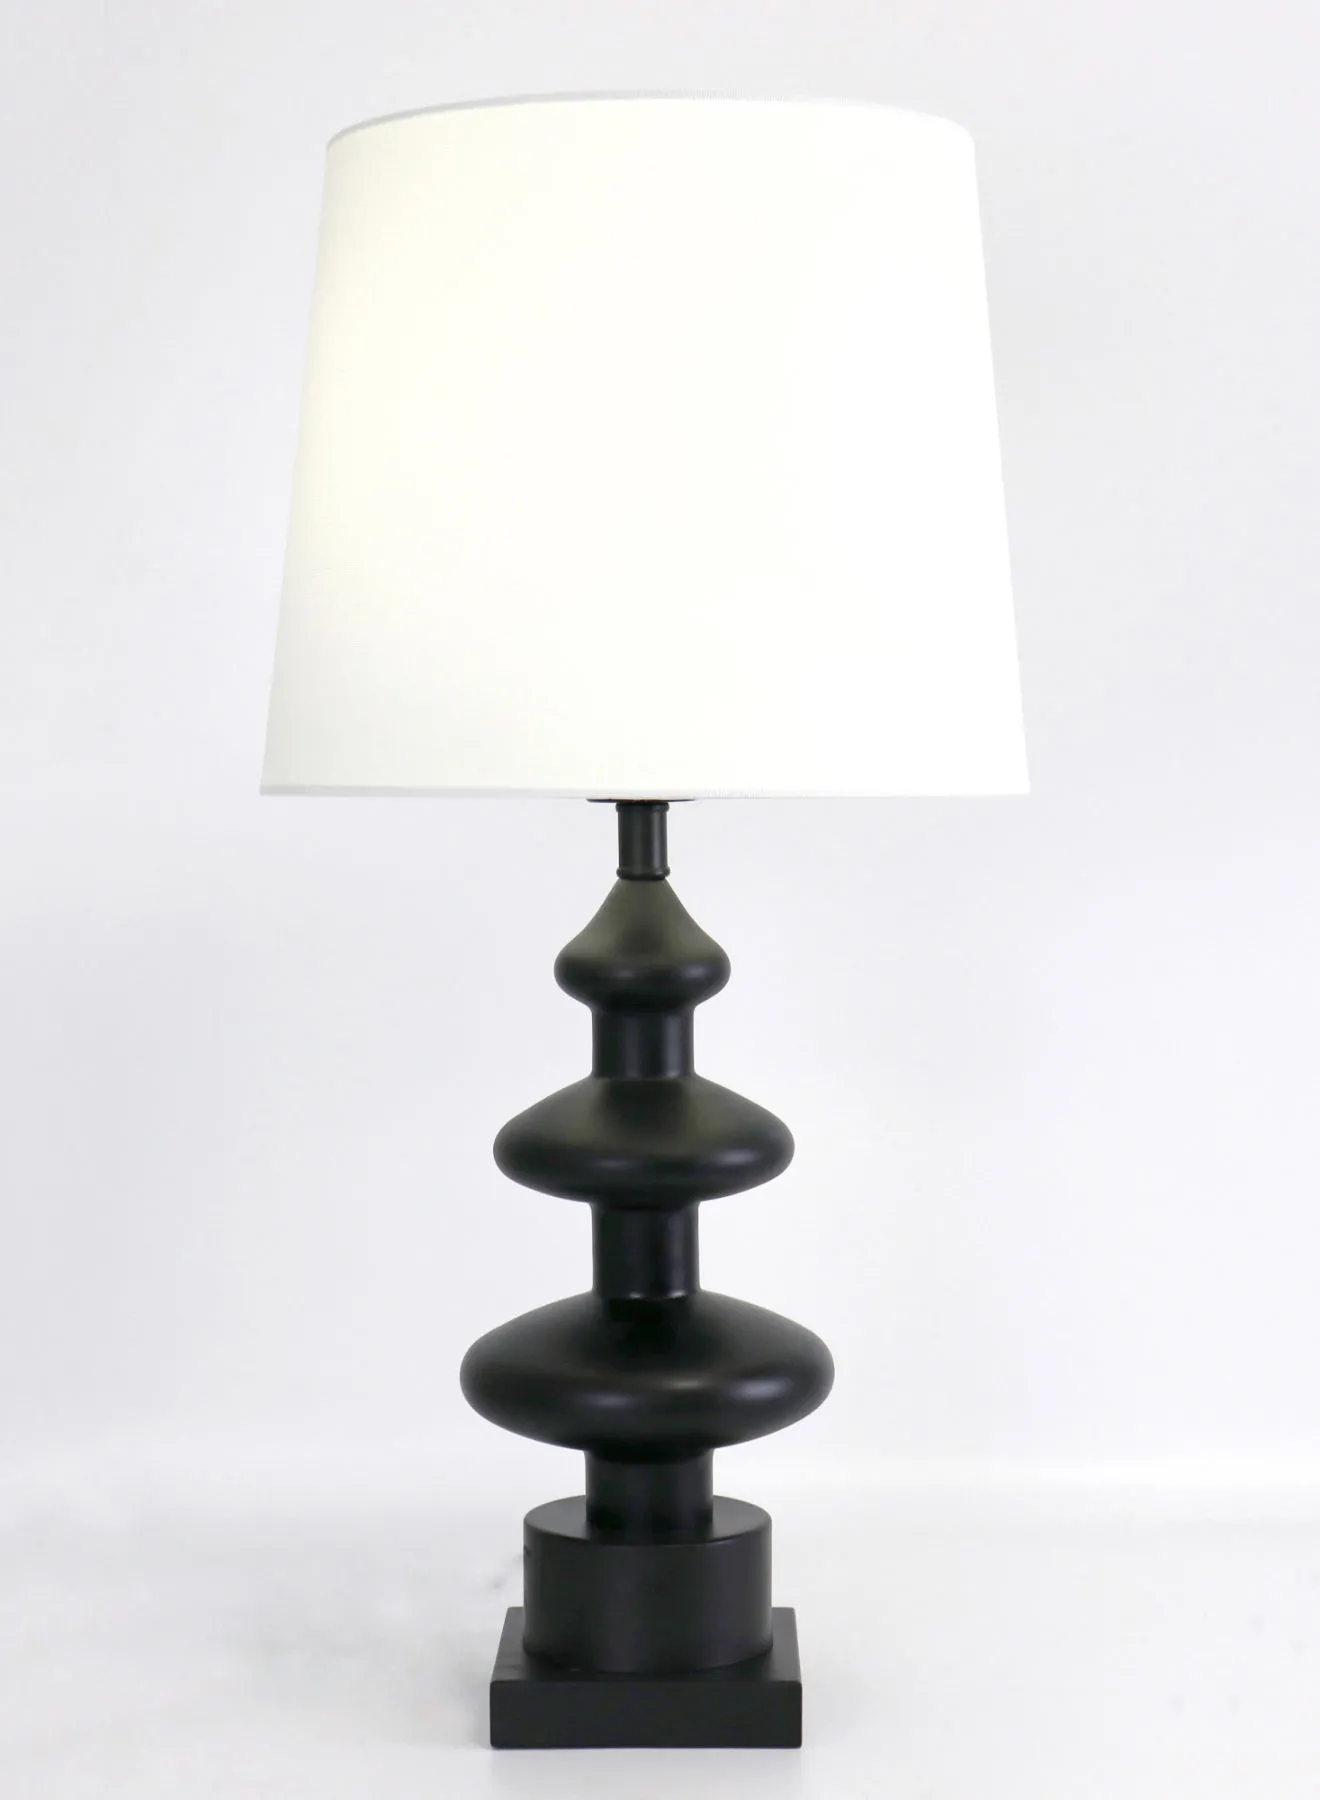 مصباح طاولة زجاجي بتصميم عصري من ebb & flow مادة فاخرة فريدة من نوعها ذات جودة عالية لمنزل أنيق مثالي RSN71048 أسود 11.8 x 24.4